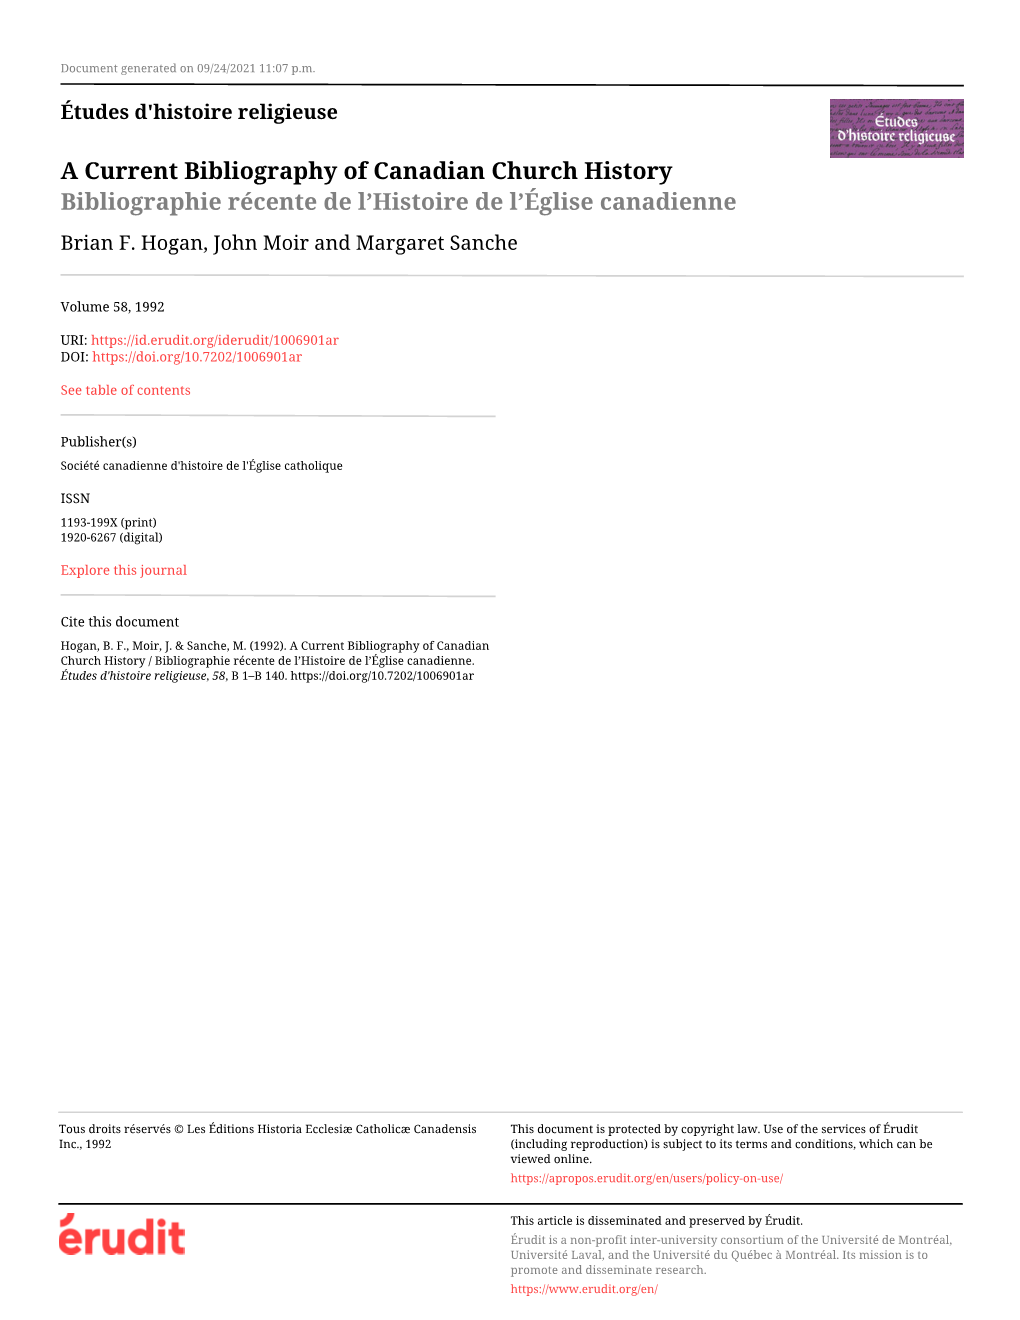 A Current Bibliography of Canadian Church History / Bibliographie Récente De L’Histoire De L’Église Canadienne